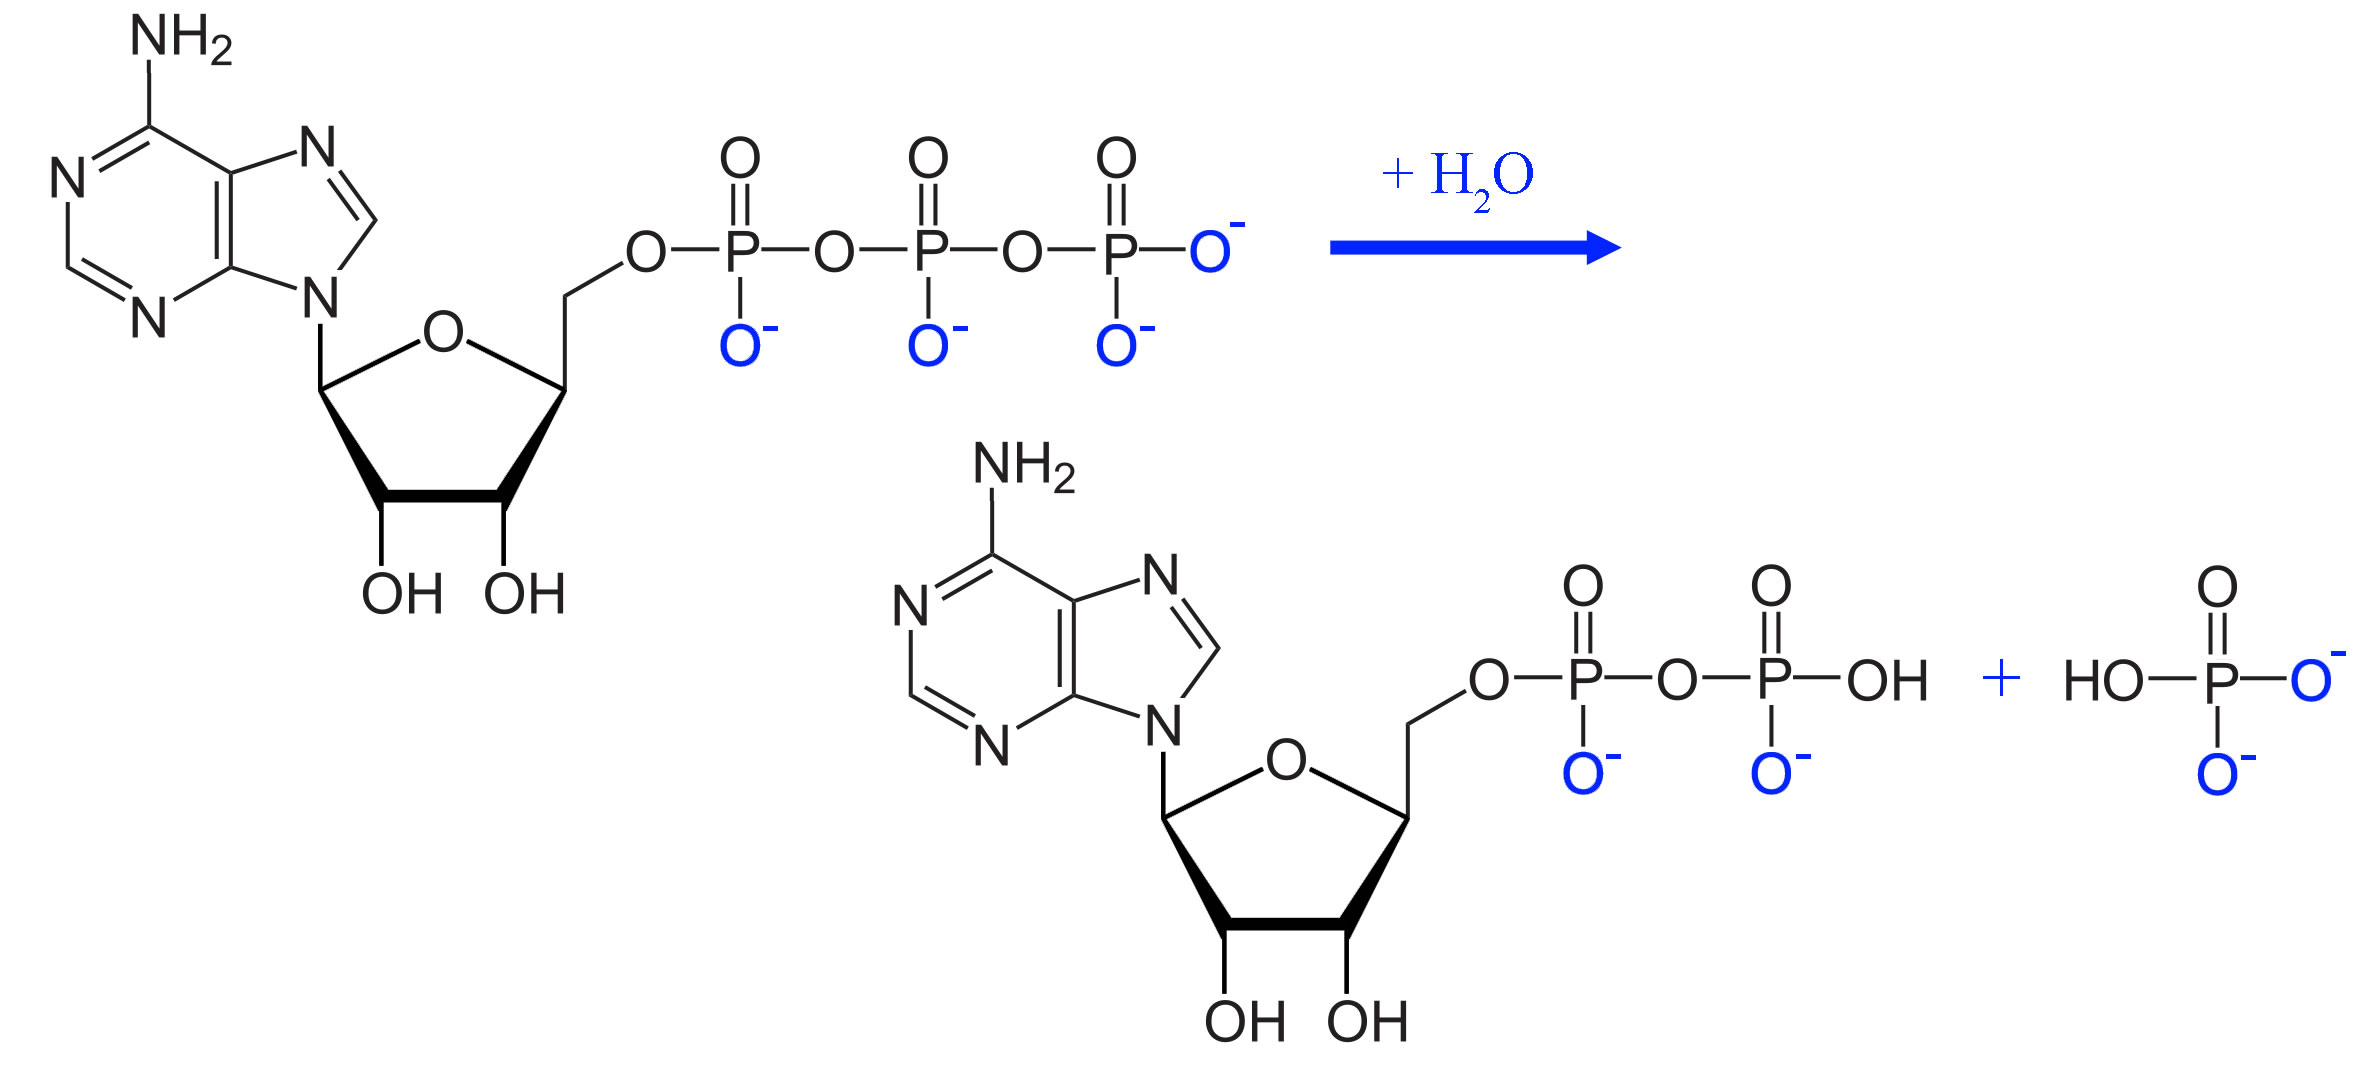 Das ATP-Molekül und seine Spaltung durch Wasser zu ADP und Pi